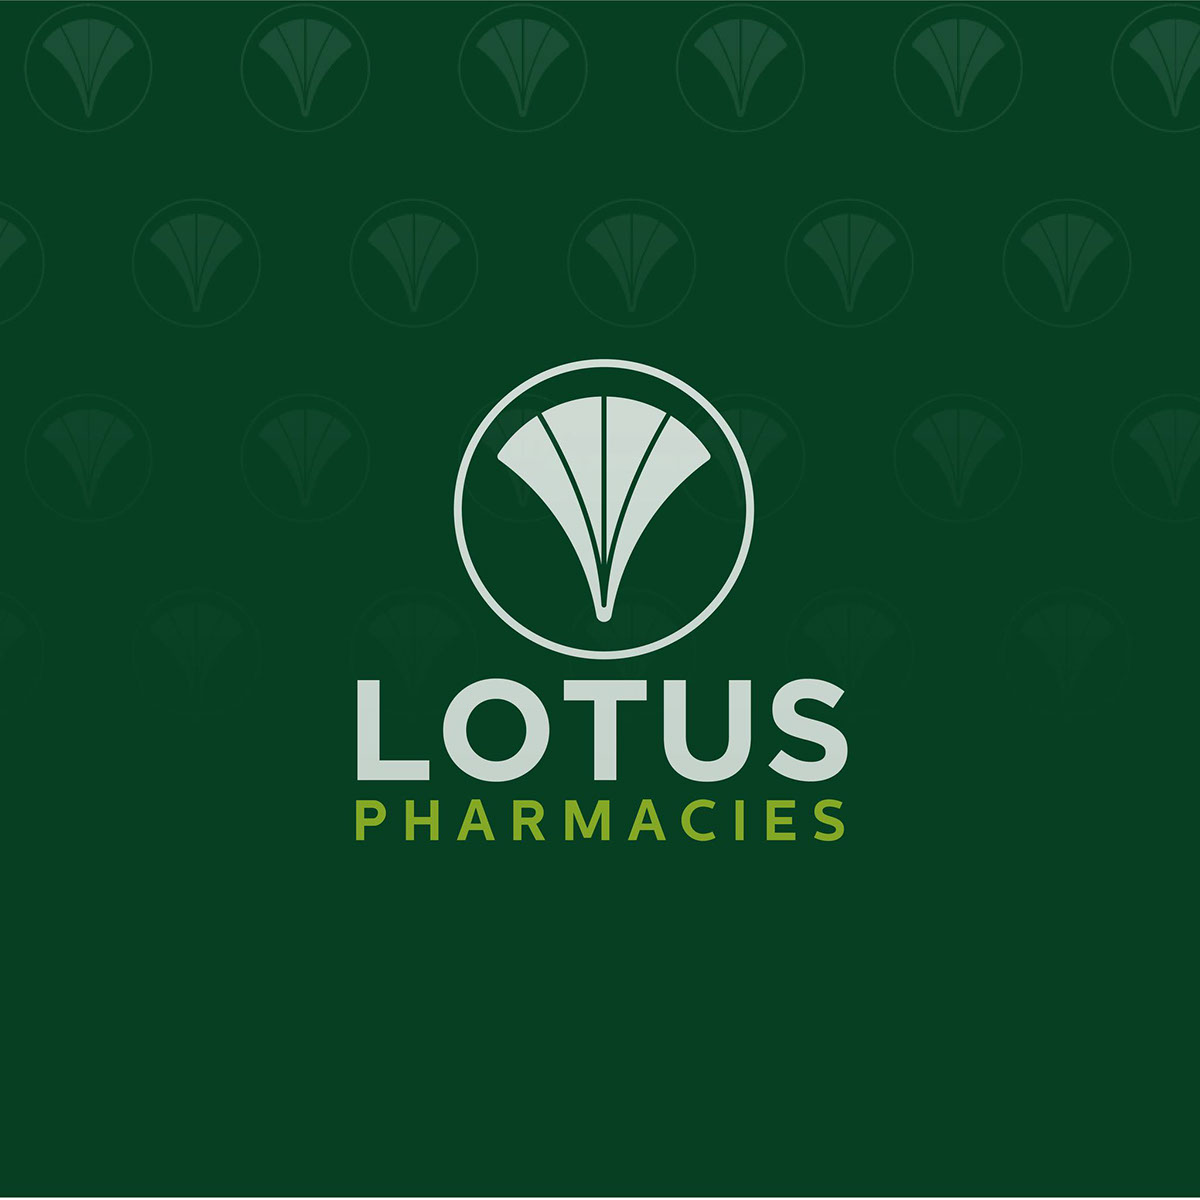 Lotus Pharmacies rendition image